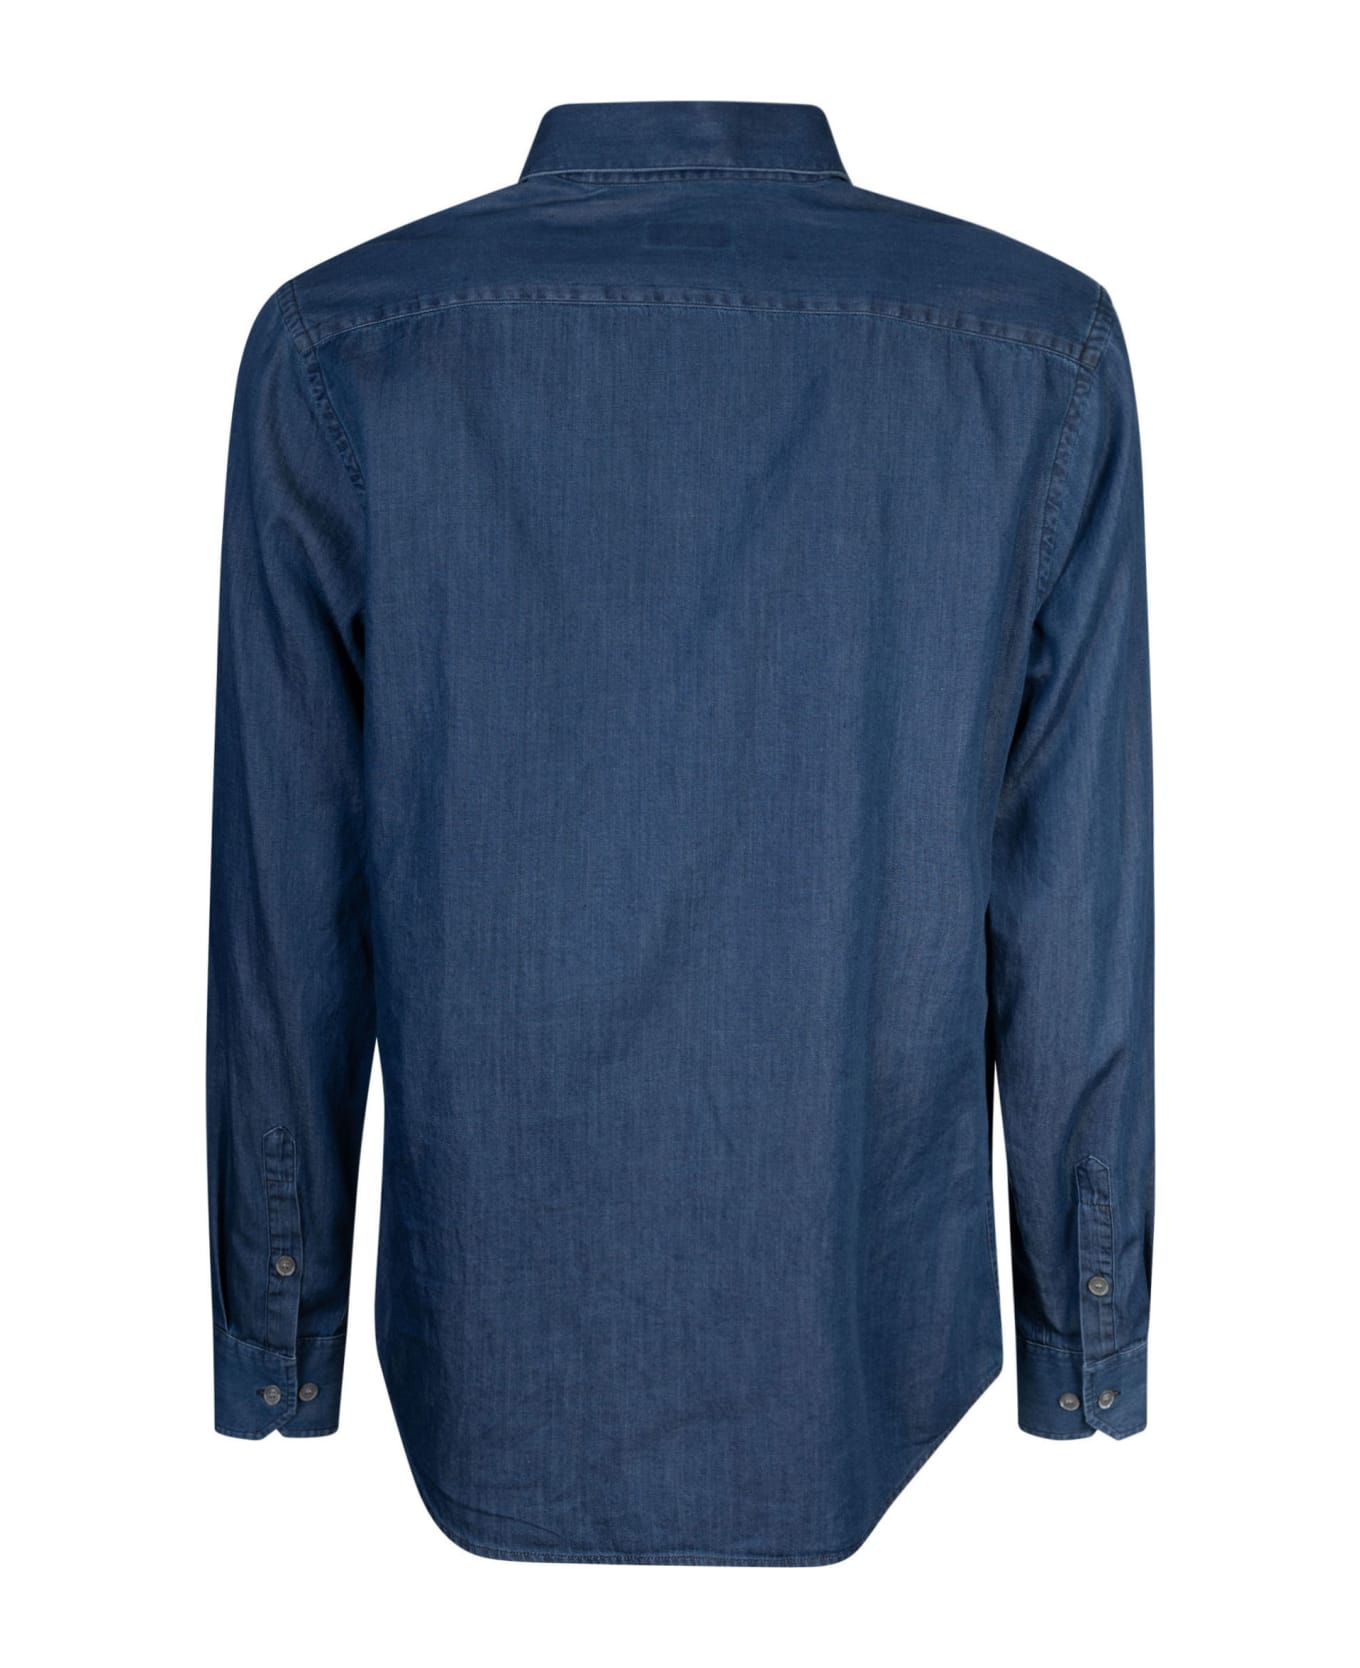 Giorgio Armani Round Hem Plain Shirt - Blue Denim